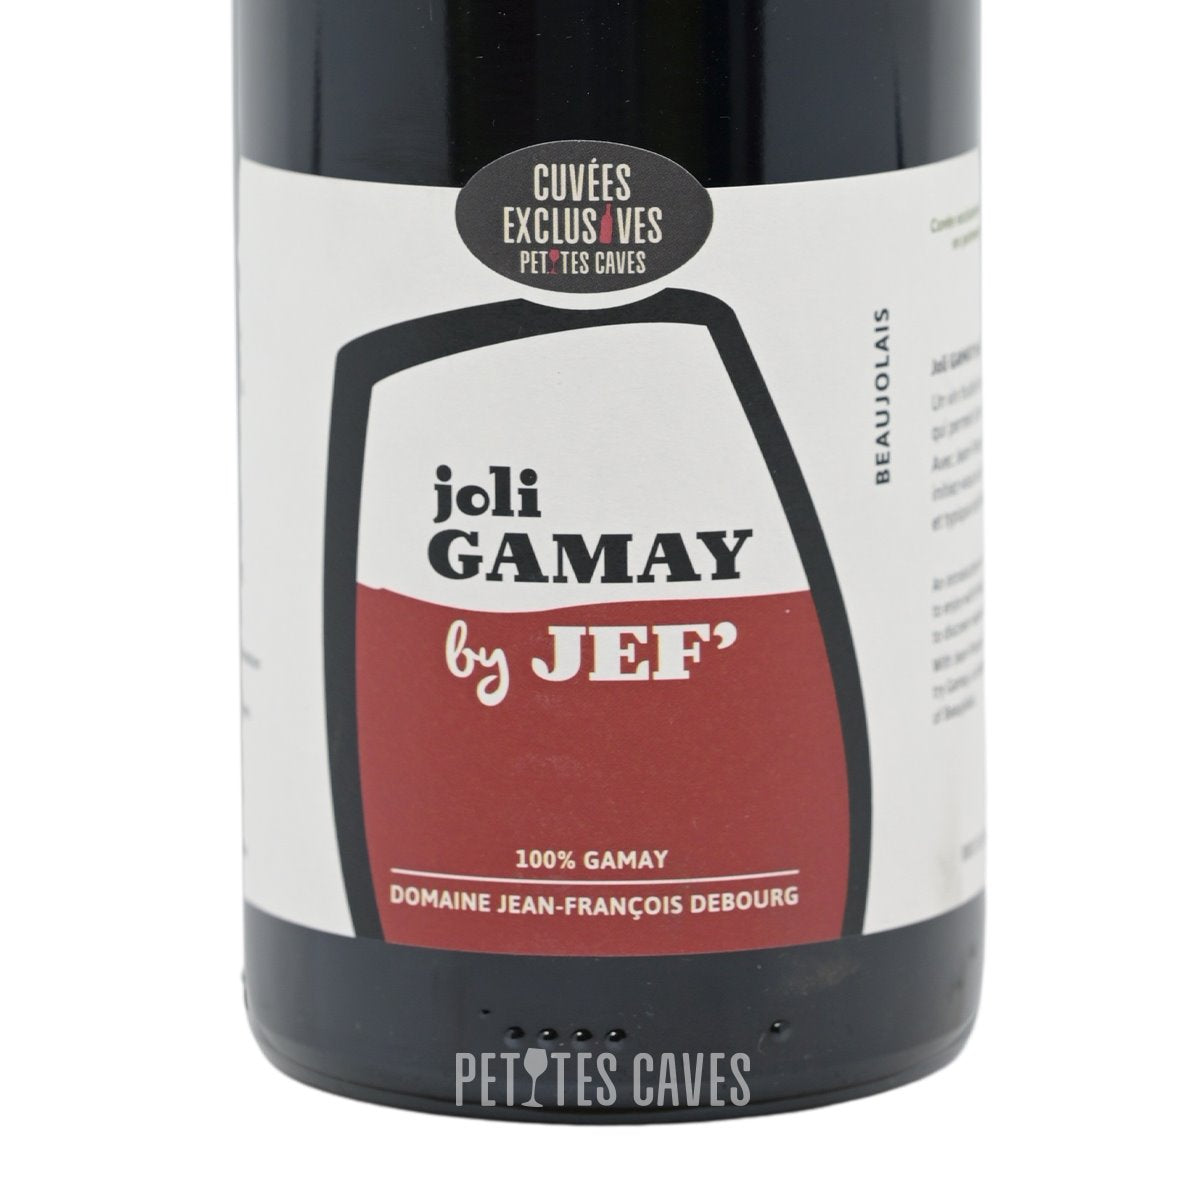 Joli Gamay by Jef 2020 - Beaujolais -  Jean-François DEBOURG, une cuvée en exclusivité avec et pour Petites Caves ! ZOOM